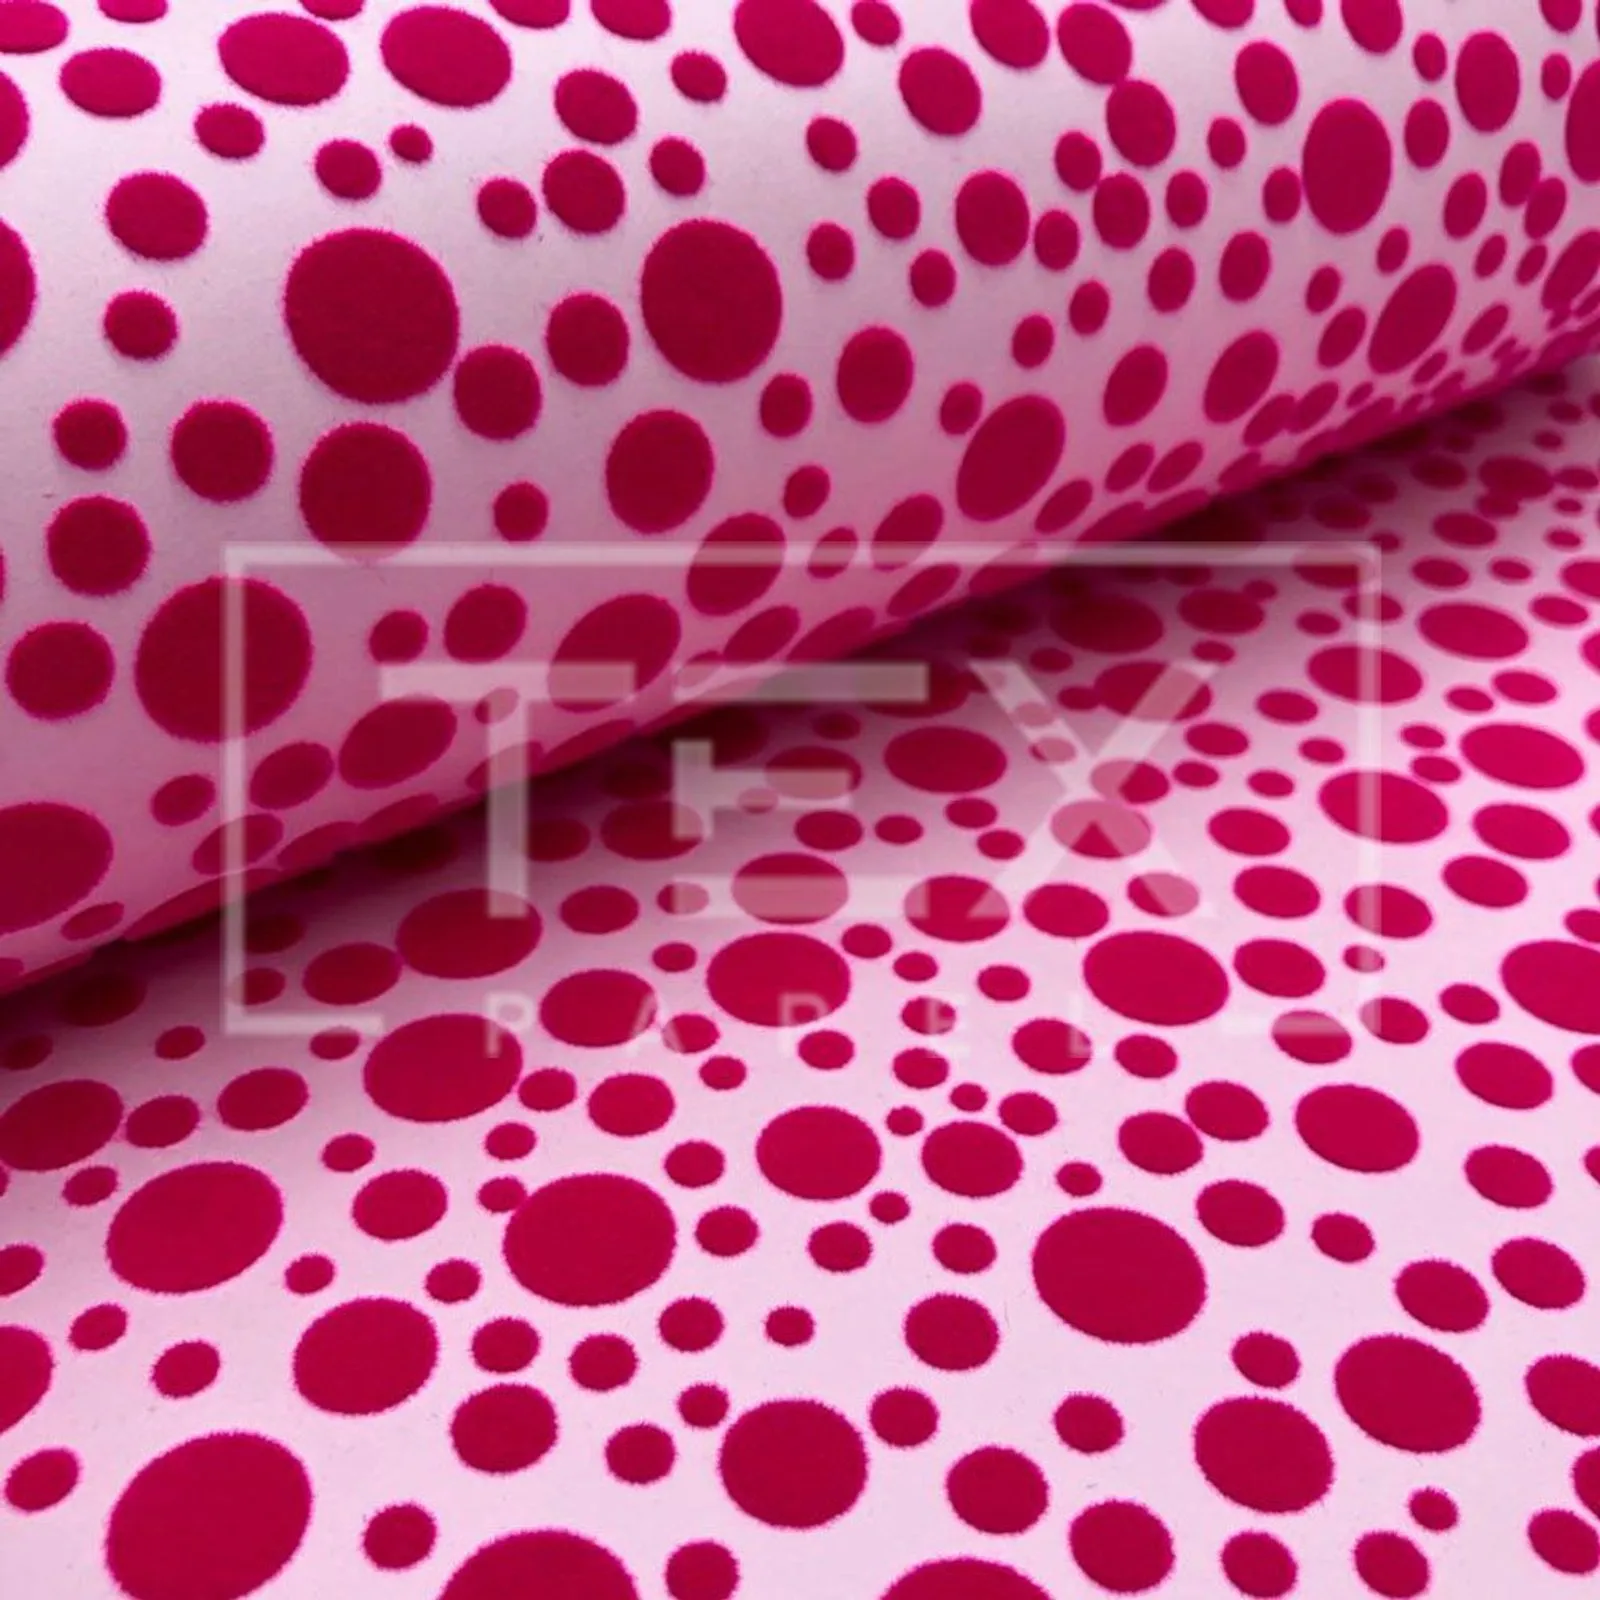 Papel Veludo Verona – Ref. V01 (Rosa claro com bolas pink